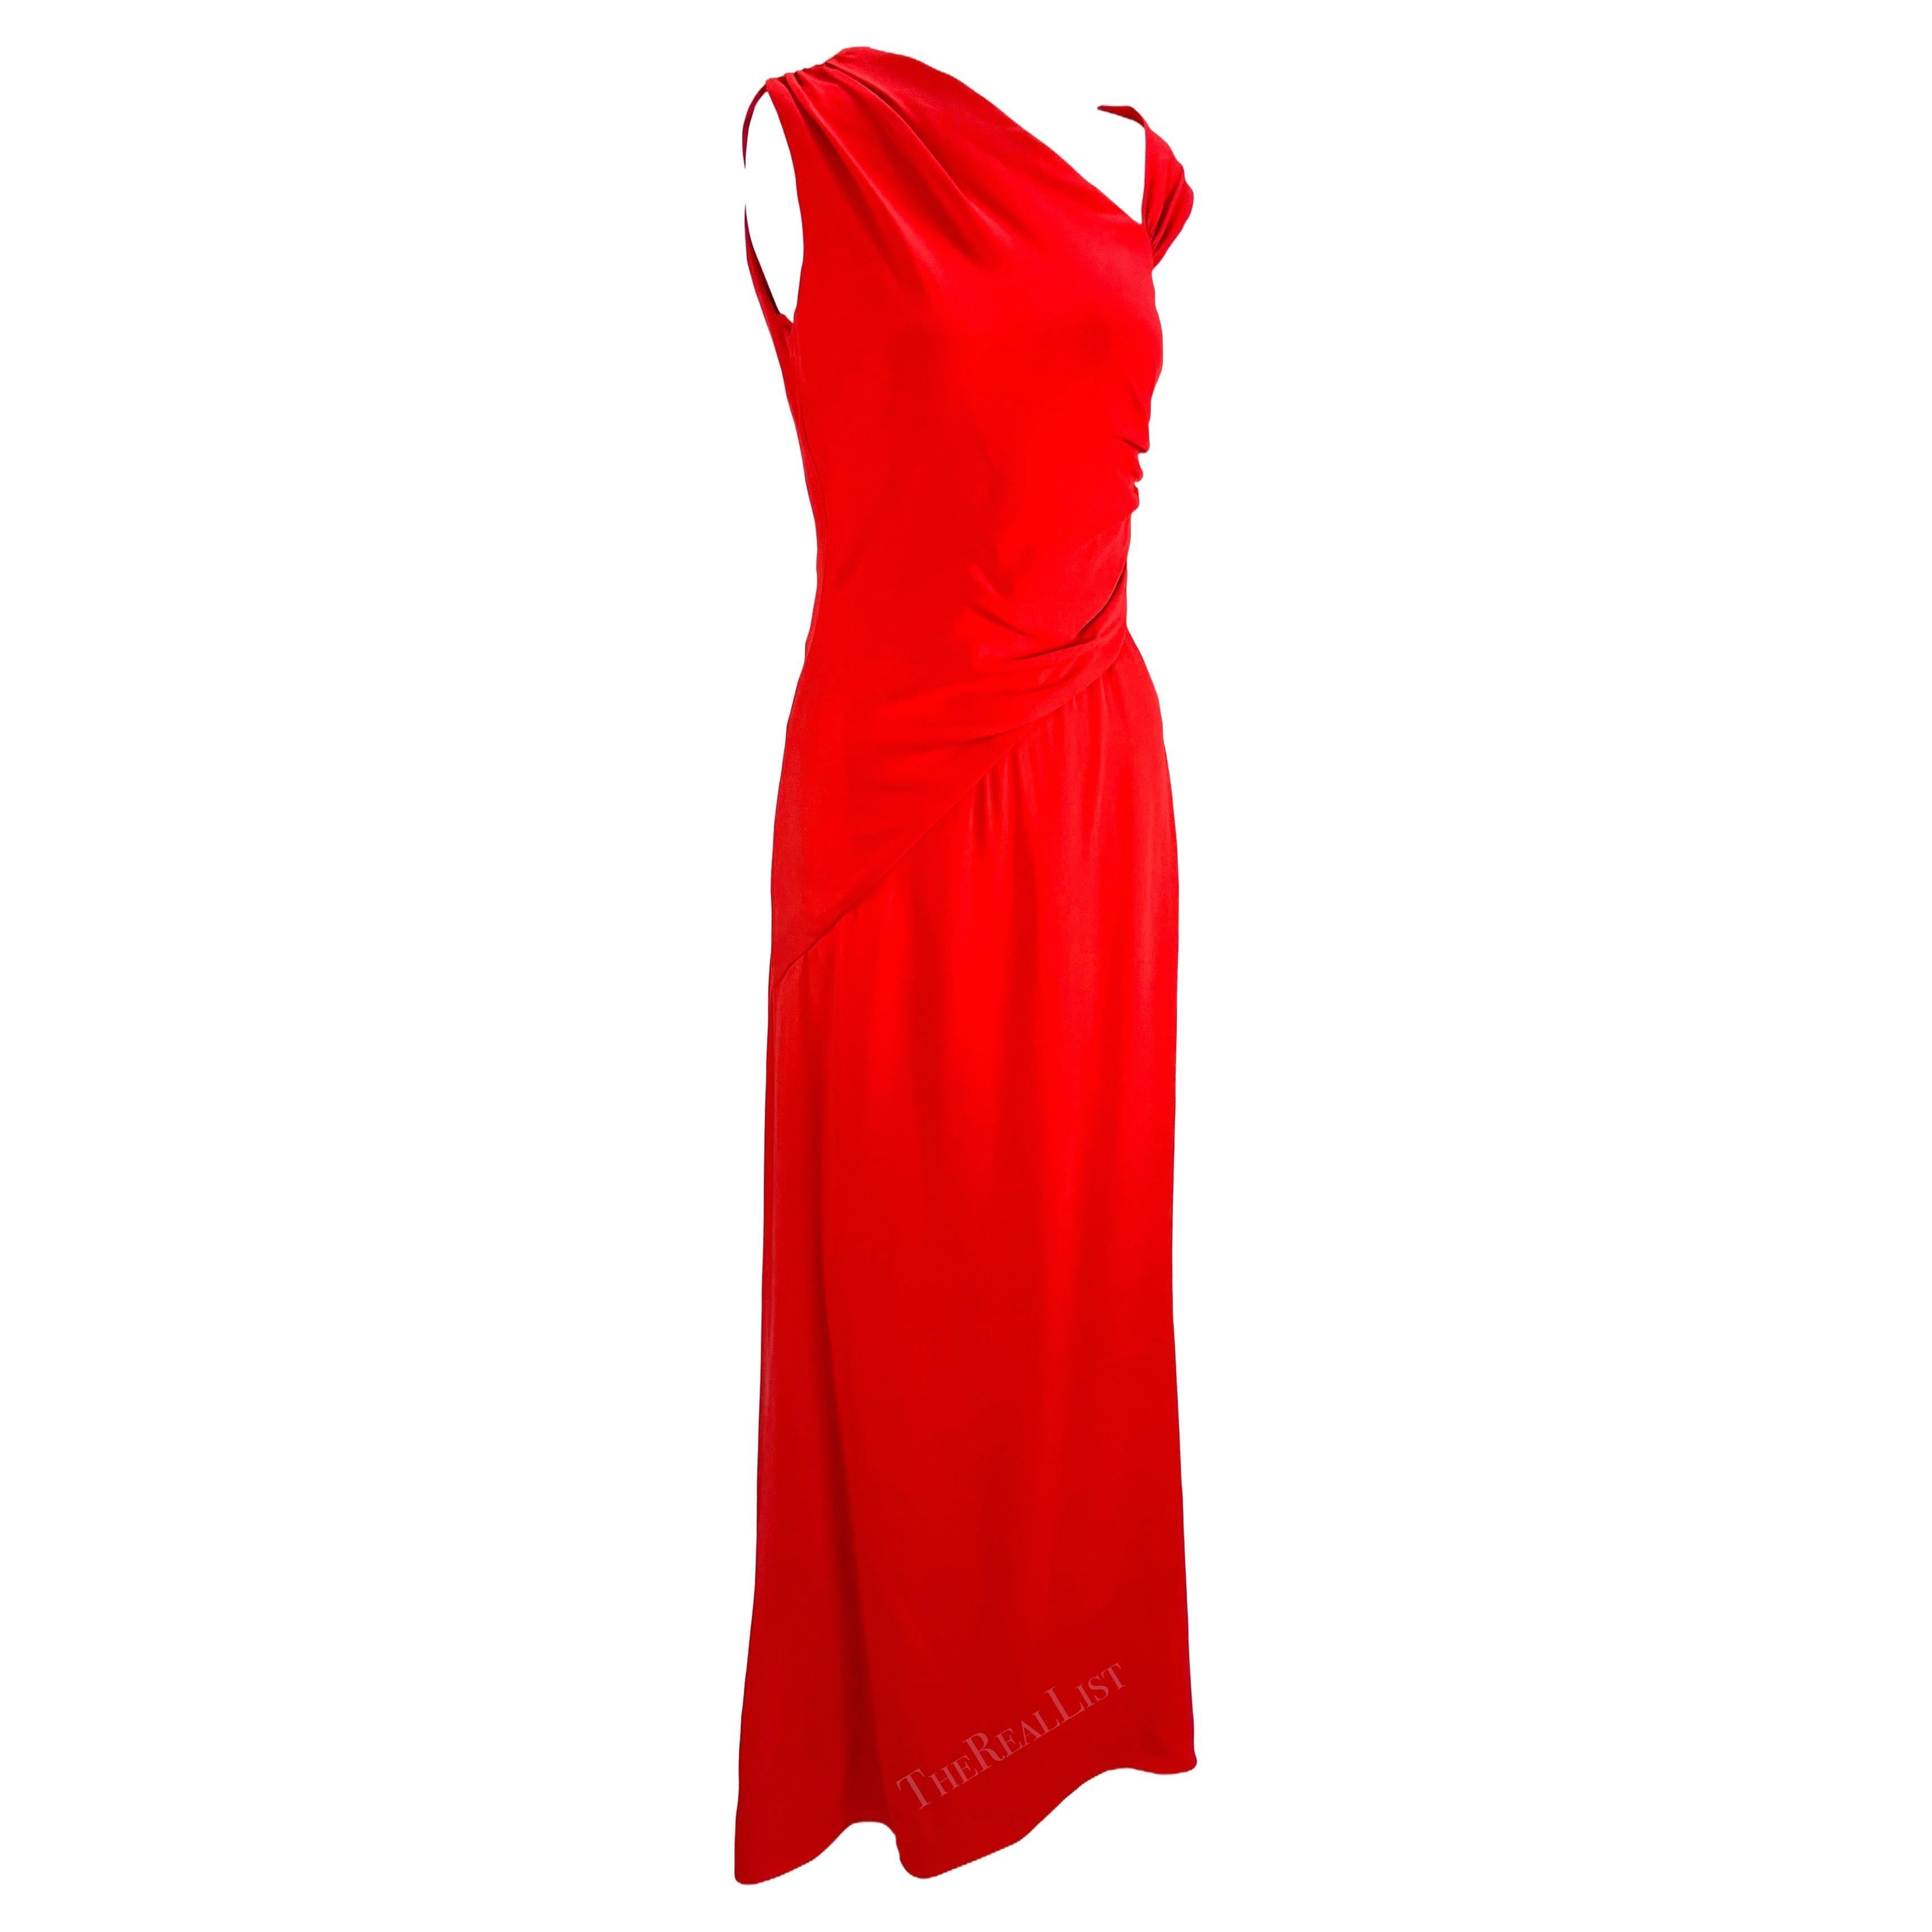 Wir präsentieren ein wunderschönes Valentino-Kleid, das Valentino Garavani vor seinem Rücktritt in seinem typischen Valentino-Rot entworfen hat. Dieses knöchellange Kleid aus den 2000er Jahren zeichnet sich durch einen asymmetrischen V-Ausschnitt